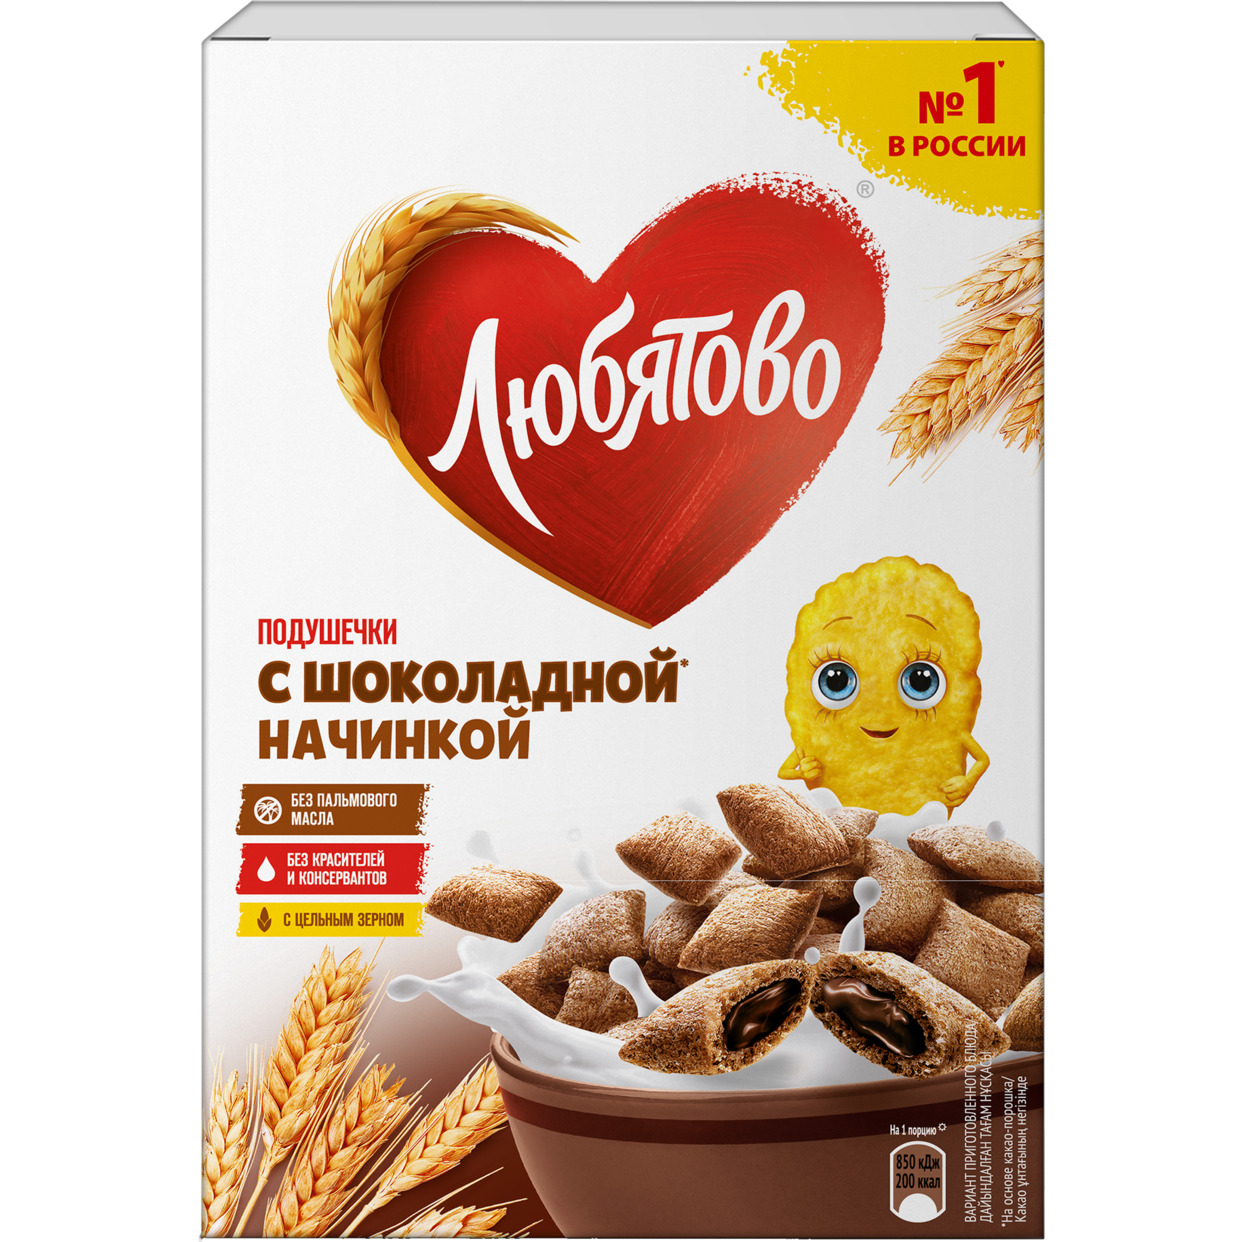 Завтраки готовые "Подушечки с шоколадной начинкой" ТМ Любятово 220г по акции в Пятерочке